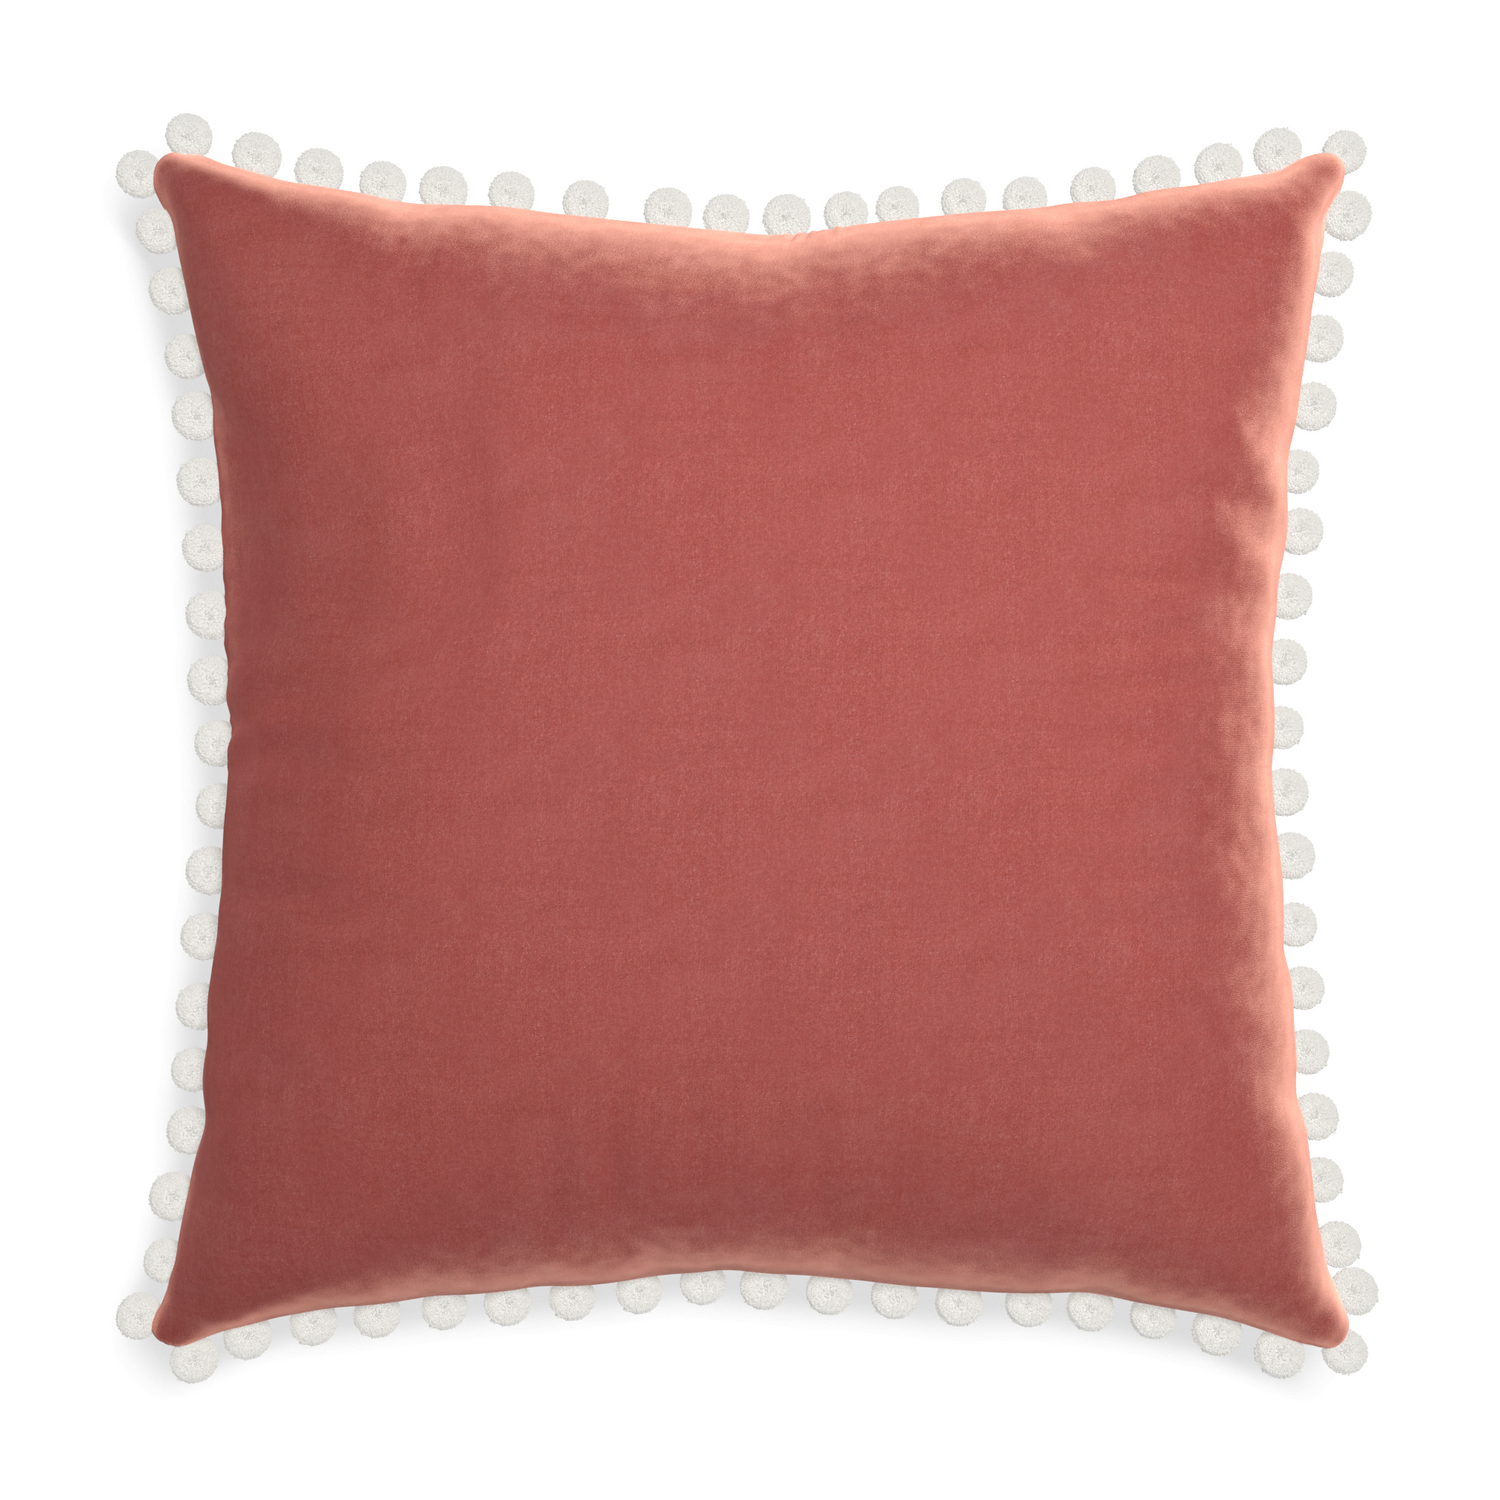 square coral velvet pillow with white pom poms